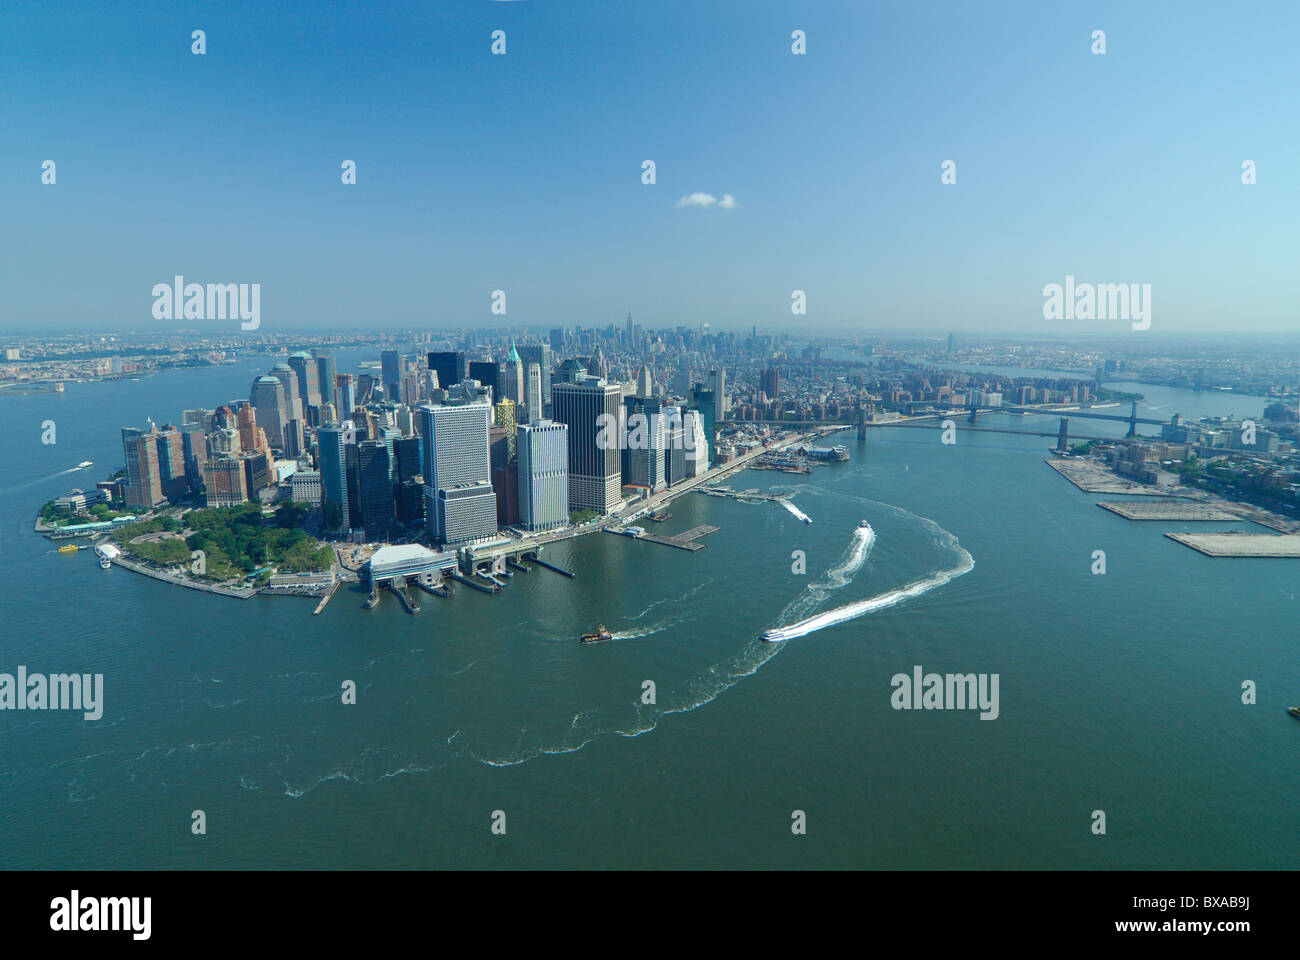 Vista aerea del punto di batteria, il quartiere finanziario e la East River, Lower Manhattan, New York City, Stati Uniti d'America Foto Stock